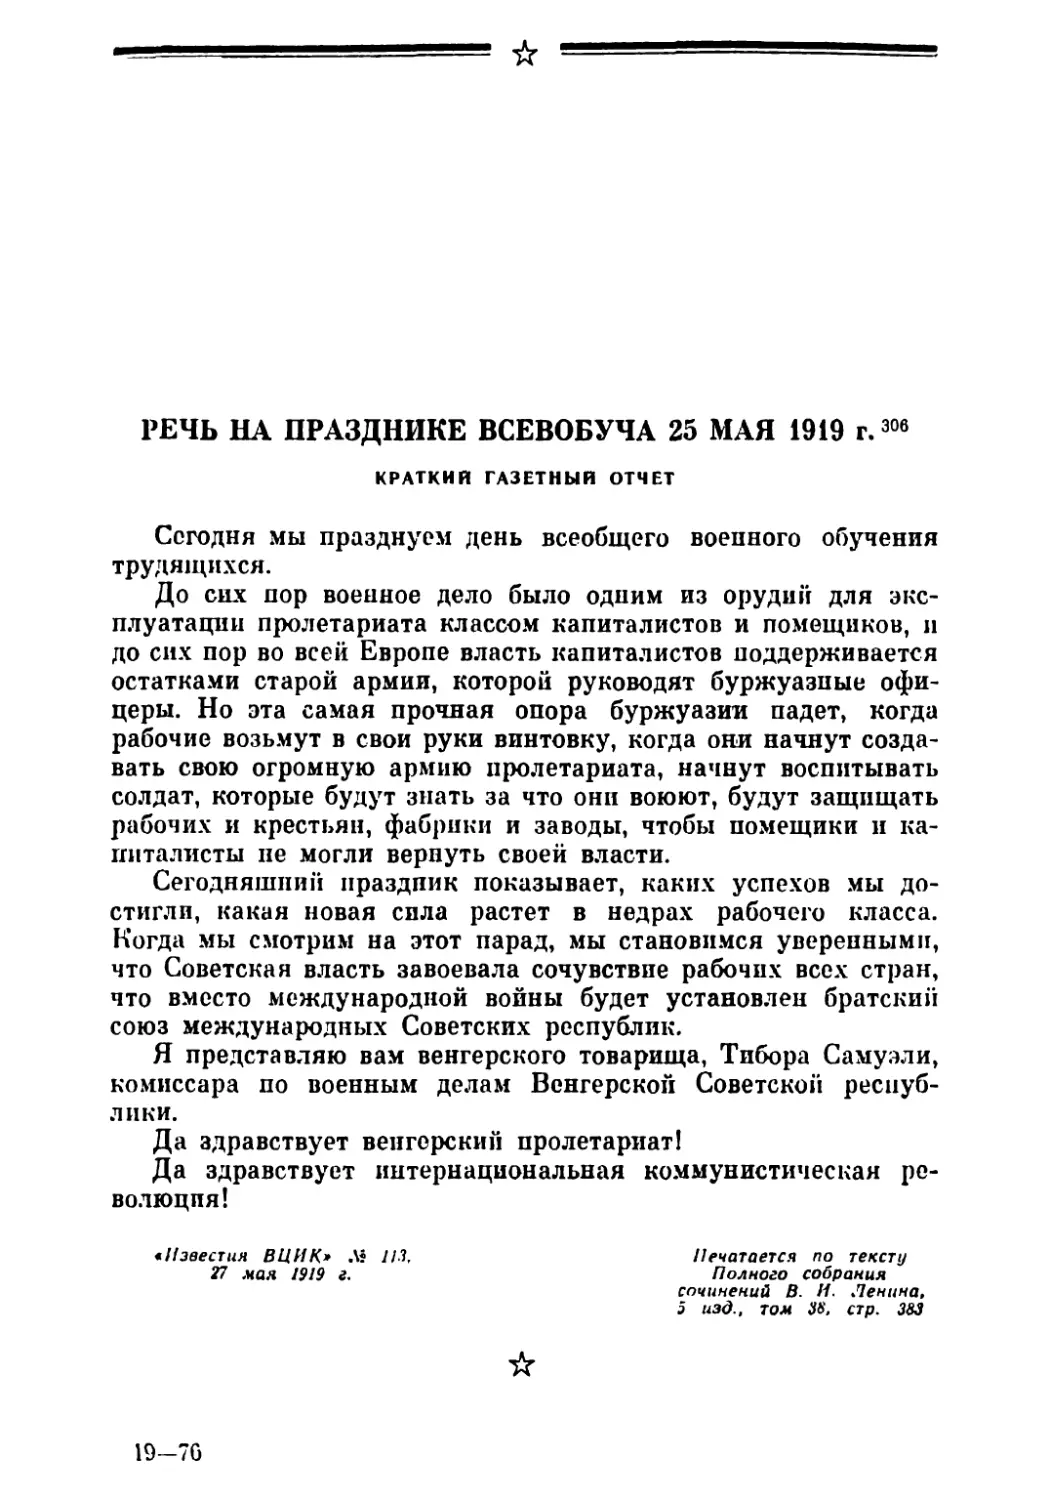 Речь на празднике Всевобуча 25 мая 1919 г. Краткий газетный отчет